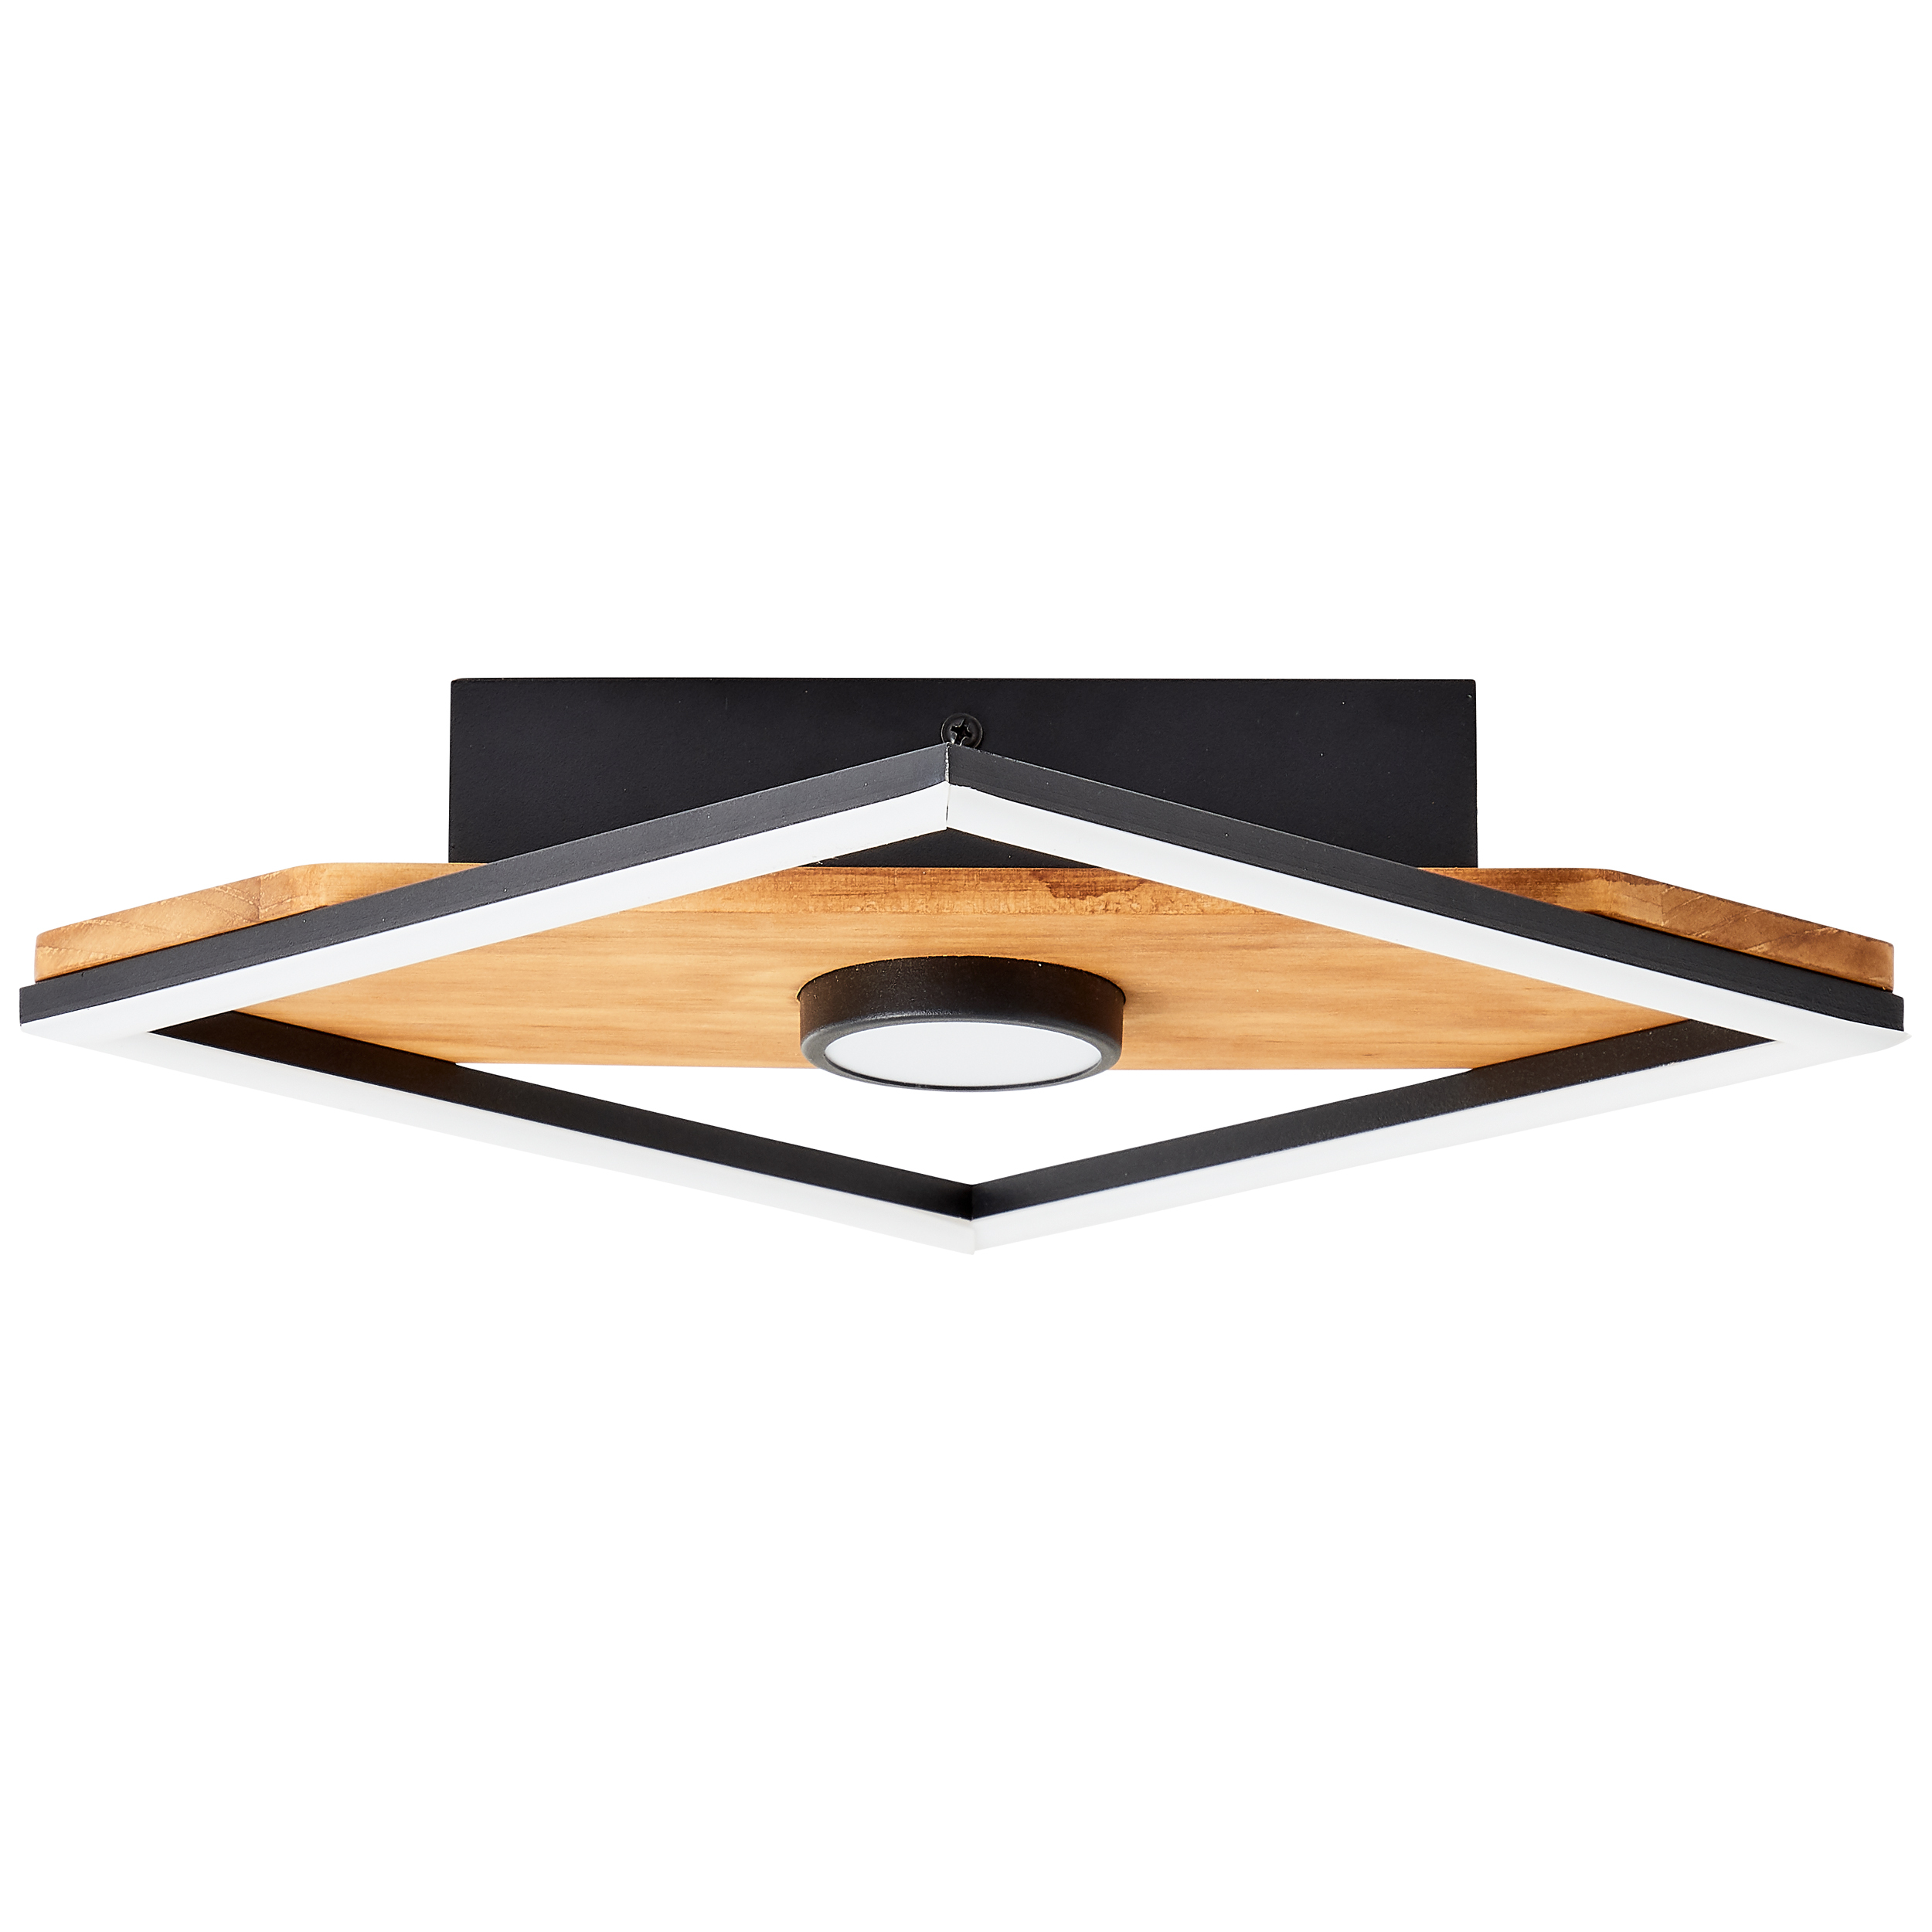 Woodbridge LED Ceiling Light 25x25cm black/wood 1flg G99755/76 